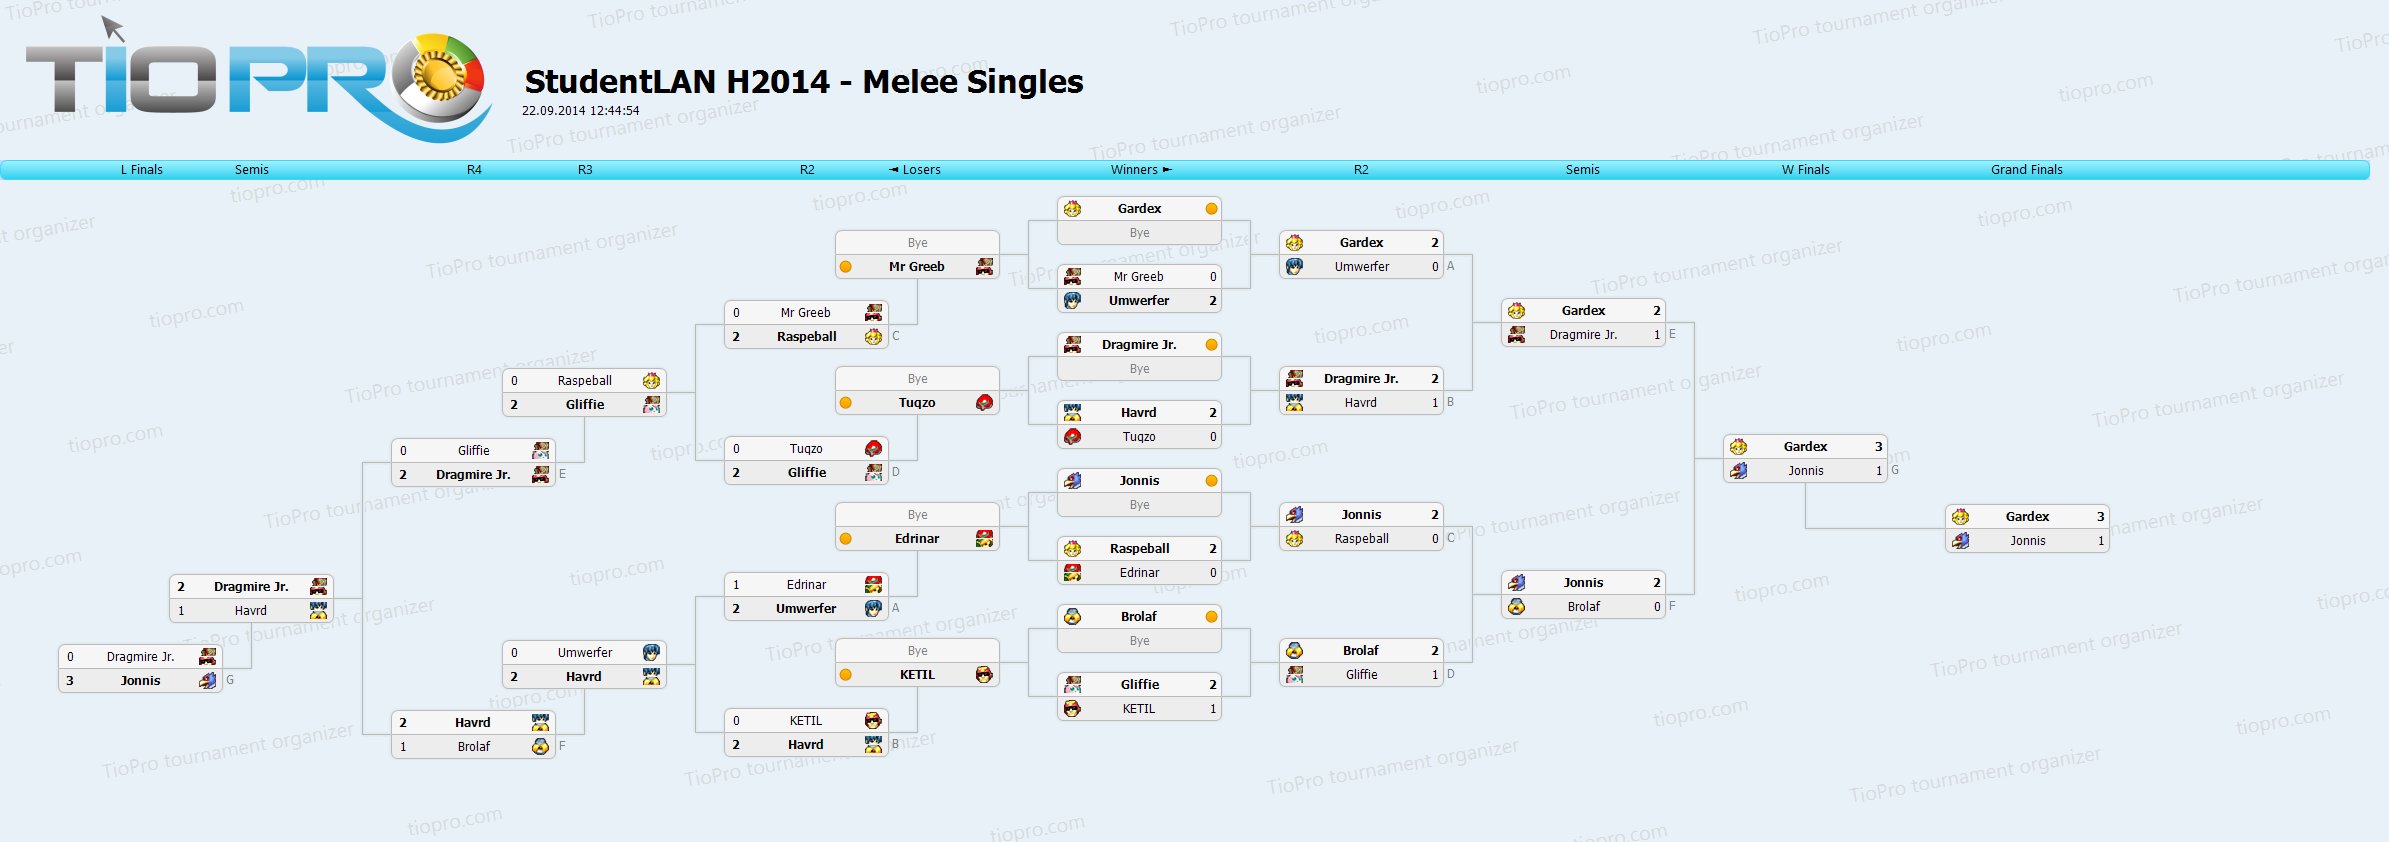 StudentLAN H2014 - Melee Singles